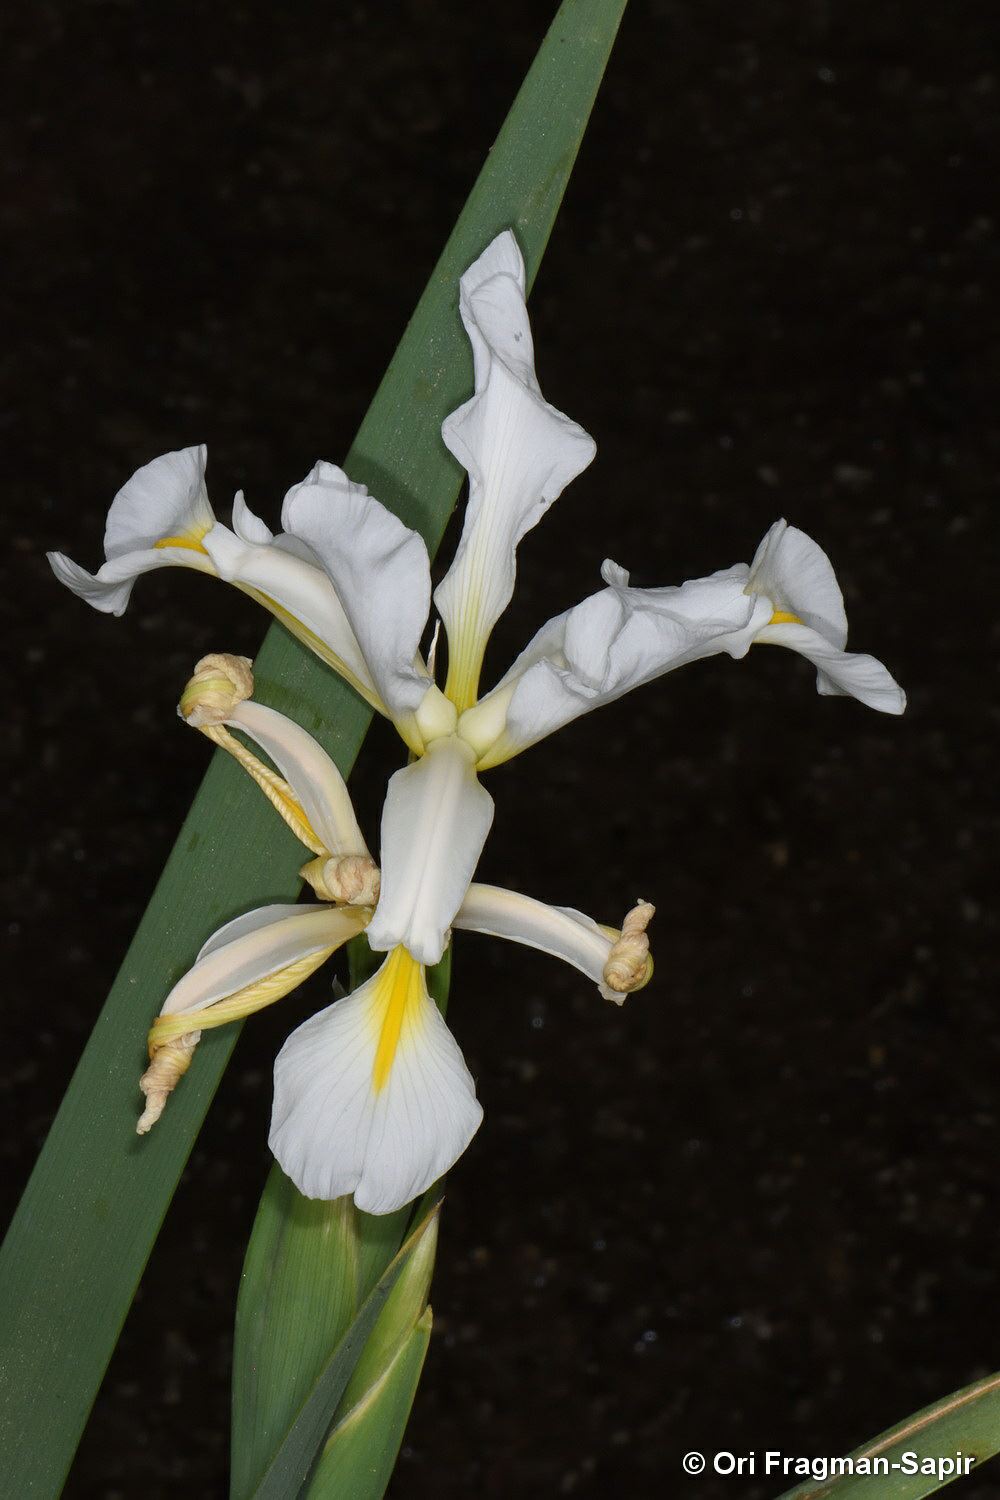 Iris orientalis - Spuria Beardless Iris, Yellow Banded Iris, Swamp Iris, איריס לבן, איריס לבן